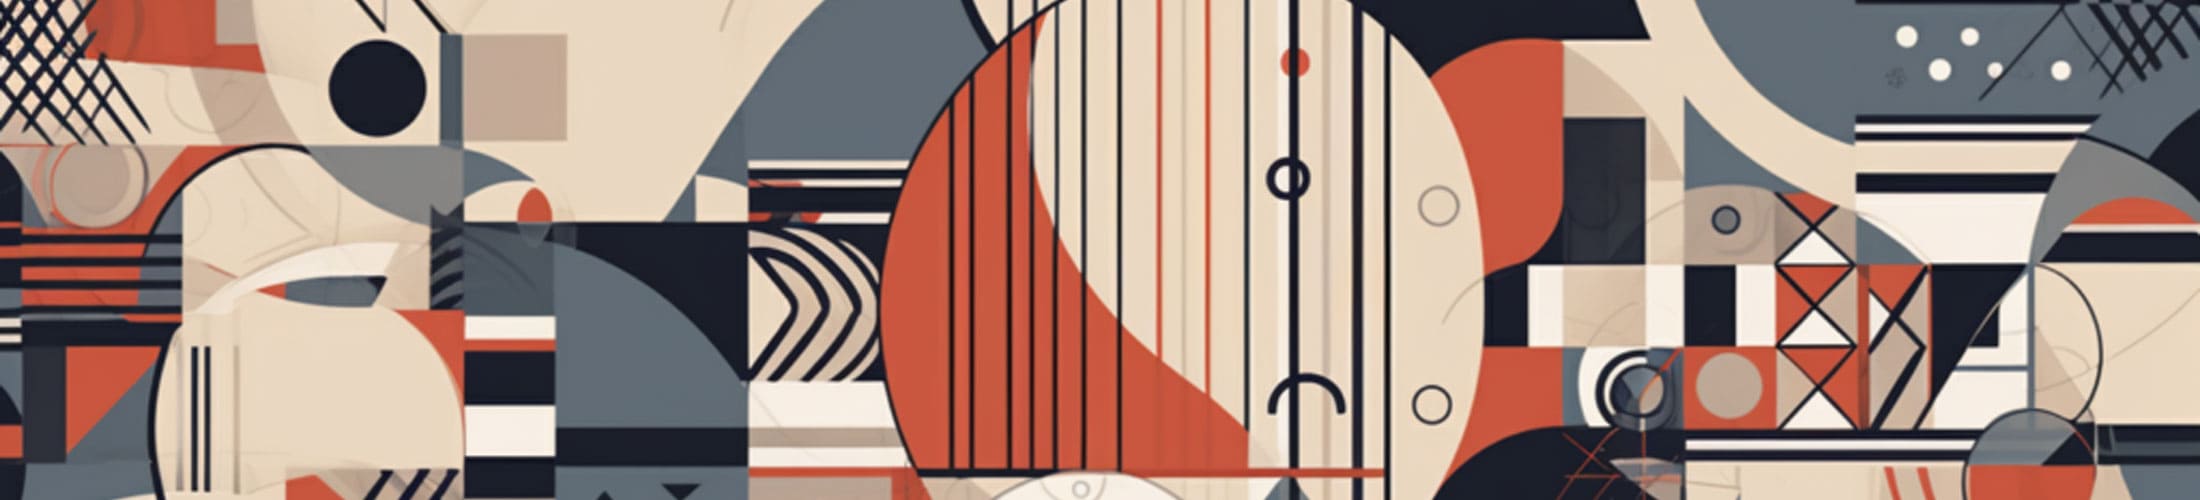 Los 23 diseños de la Bauhaus más emblemáticos